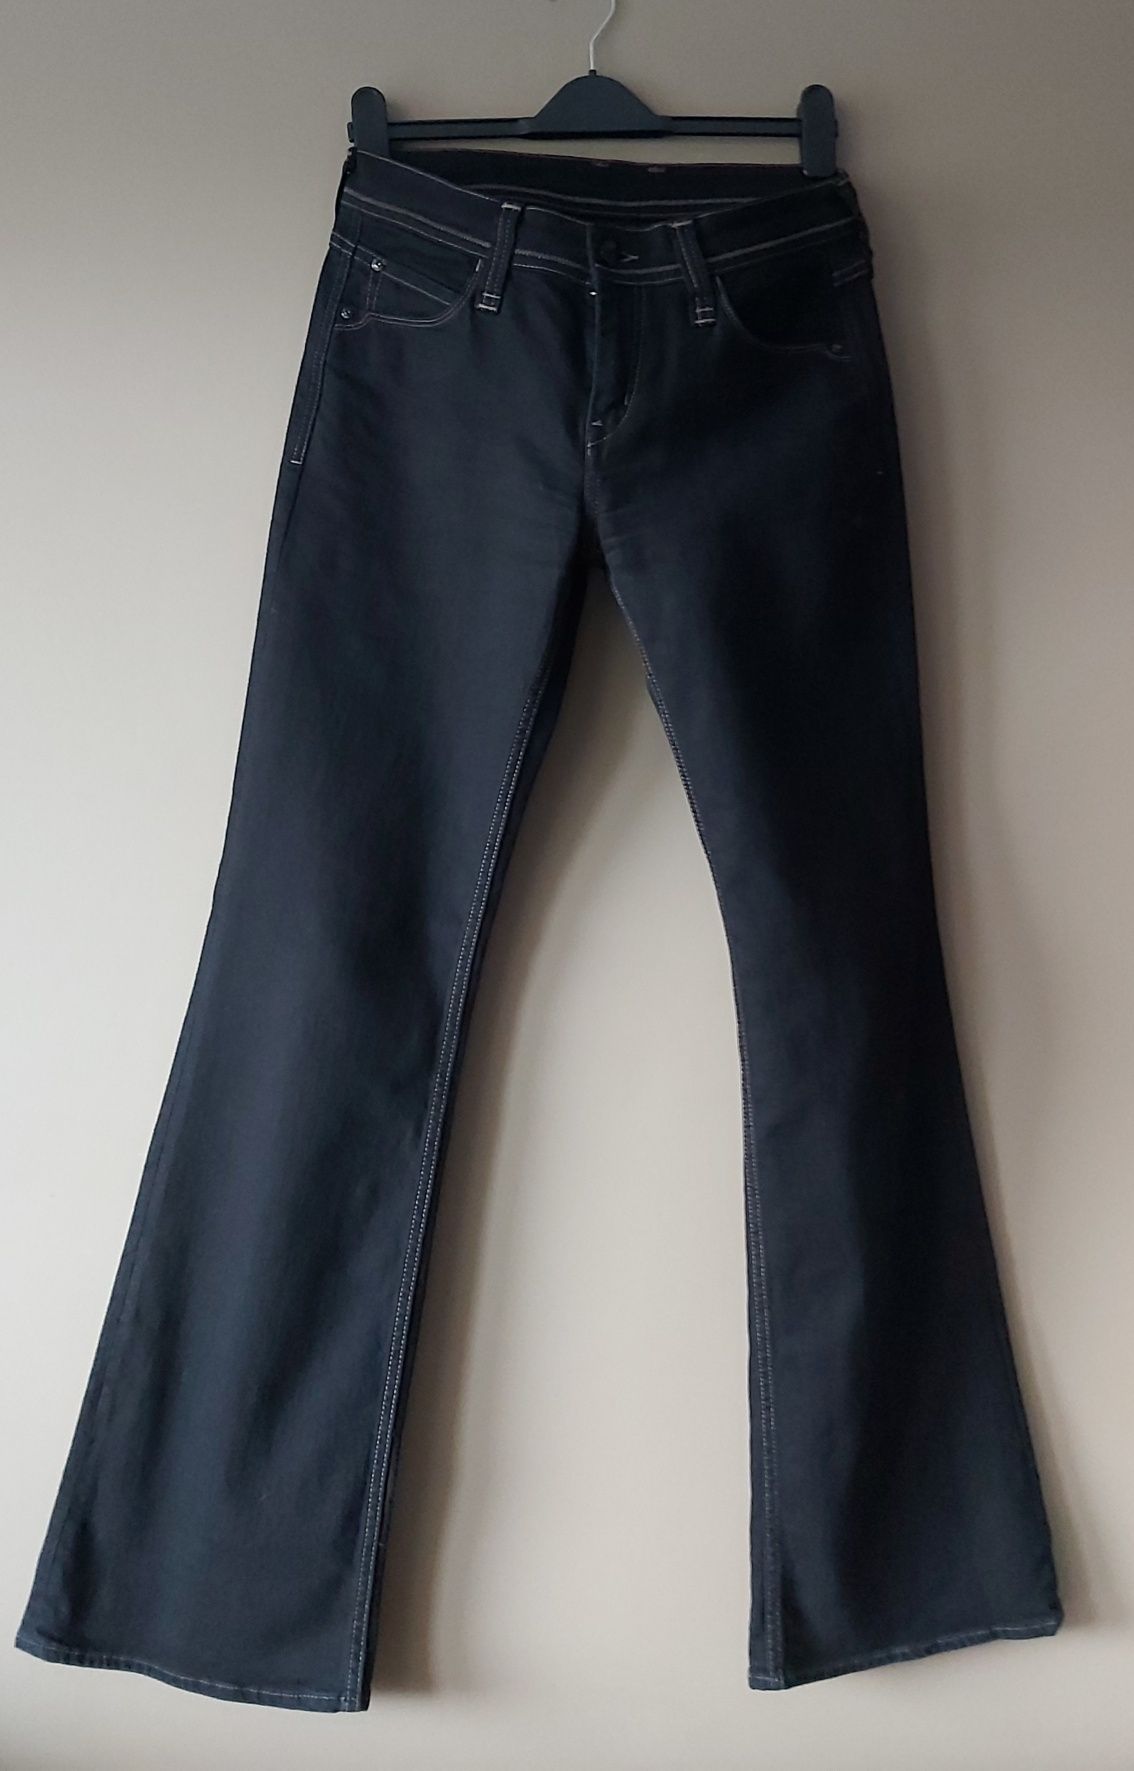 Spodnie Mustang jeans 29/32  M-L  rozszerzane nogawki